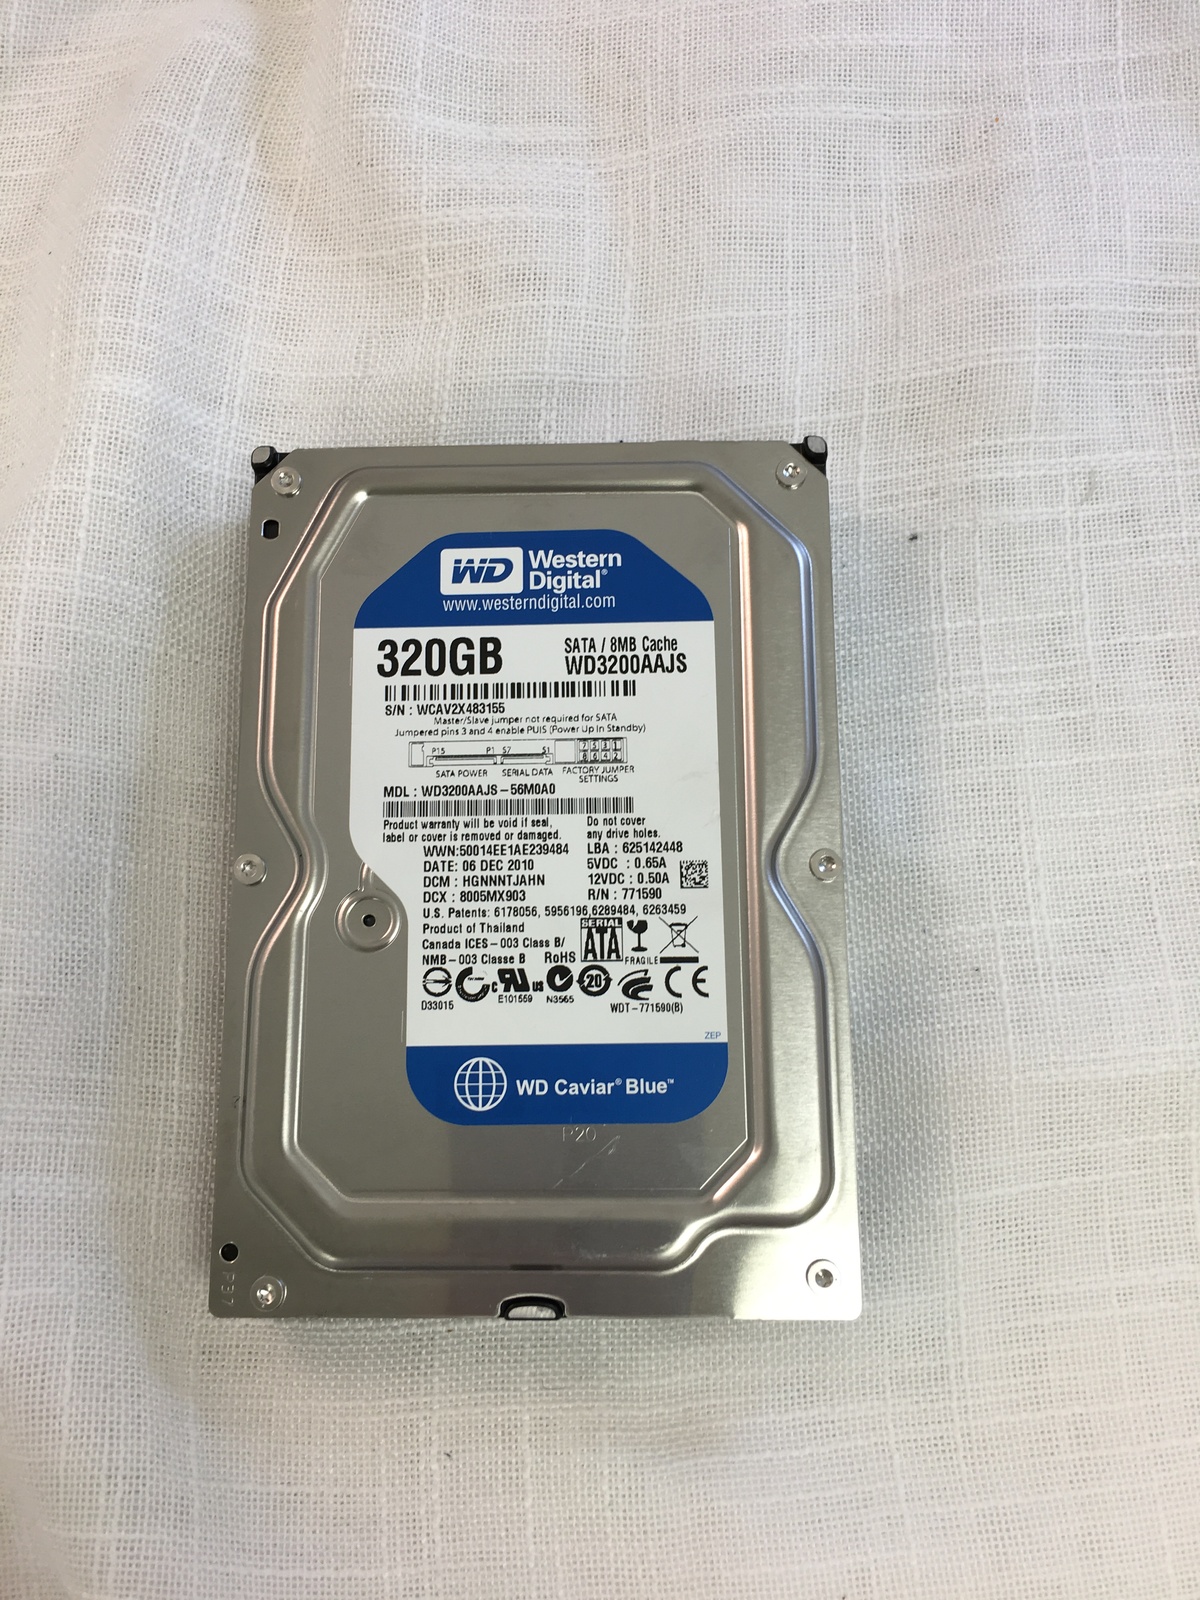 Western Digital WD Caviar Blue 320 GB (KM) - Internal Hard Disk Drives